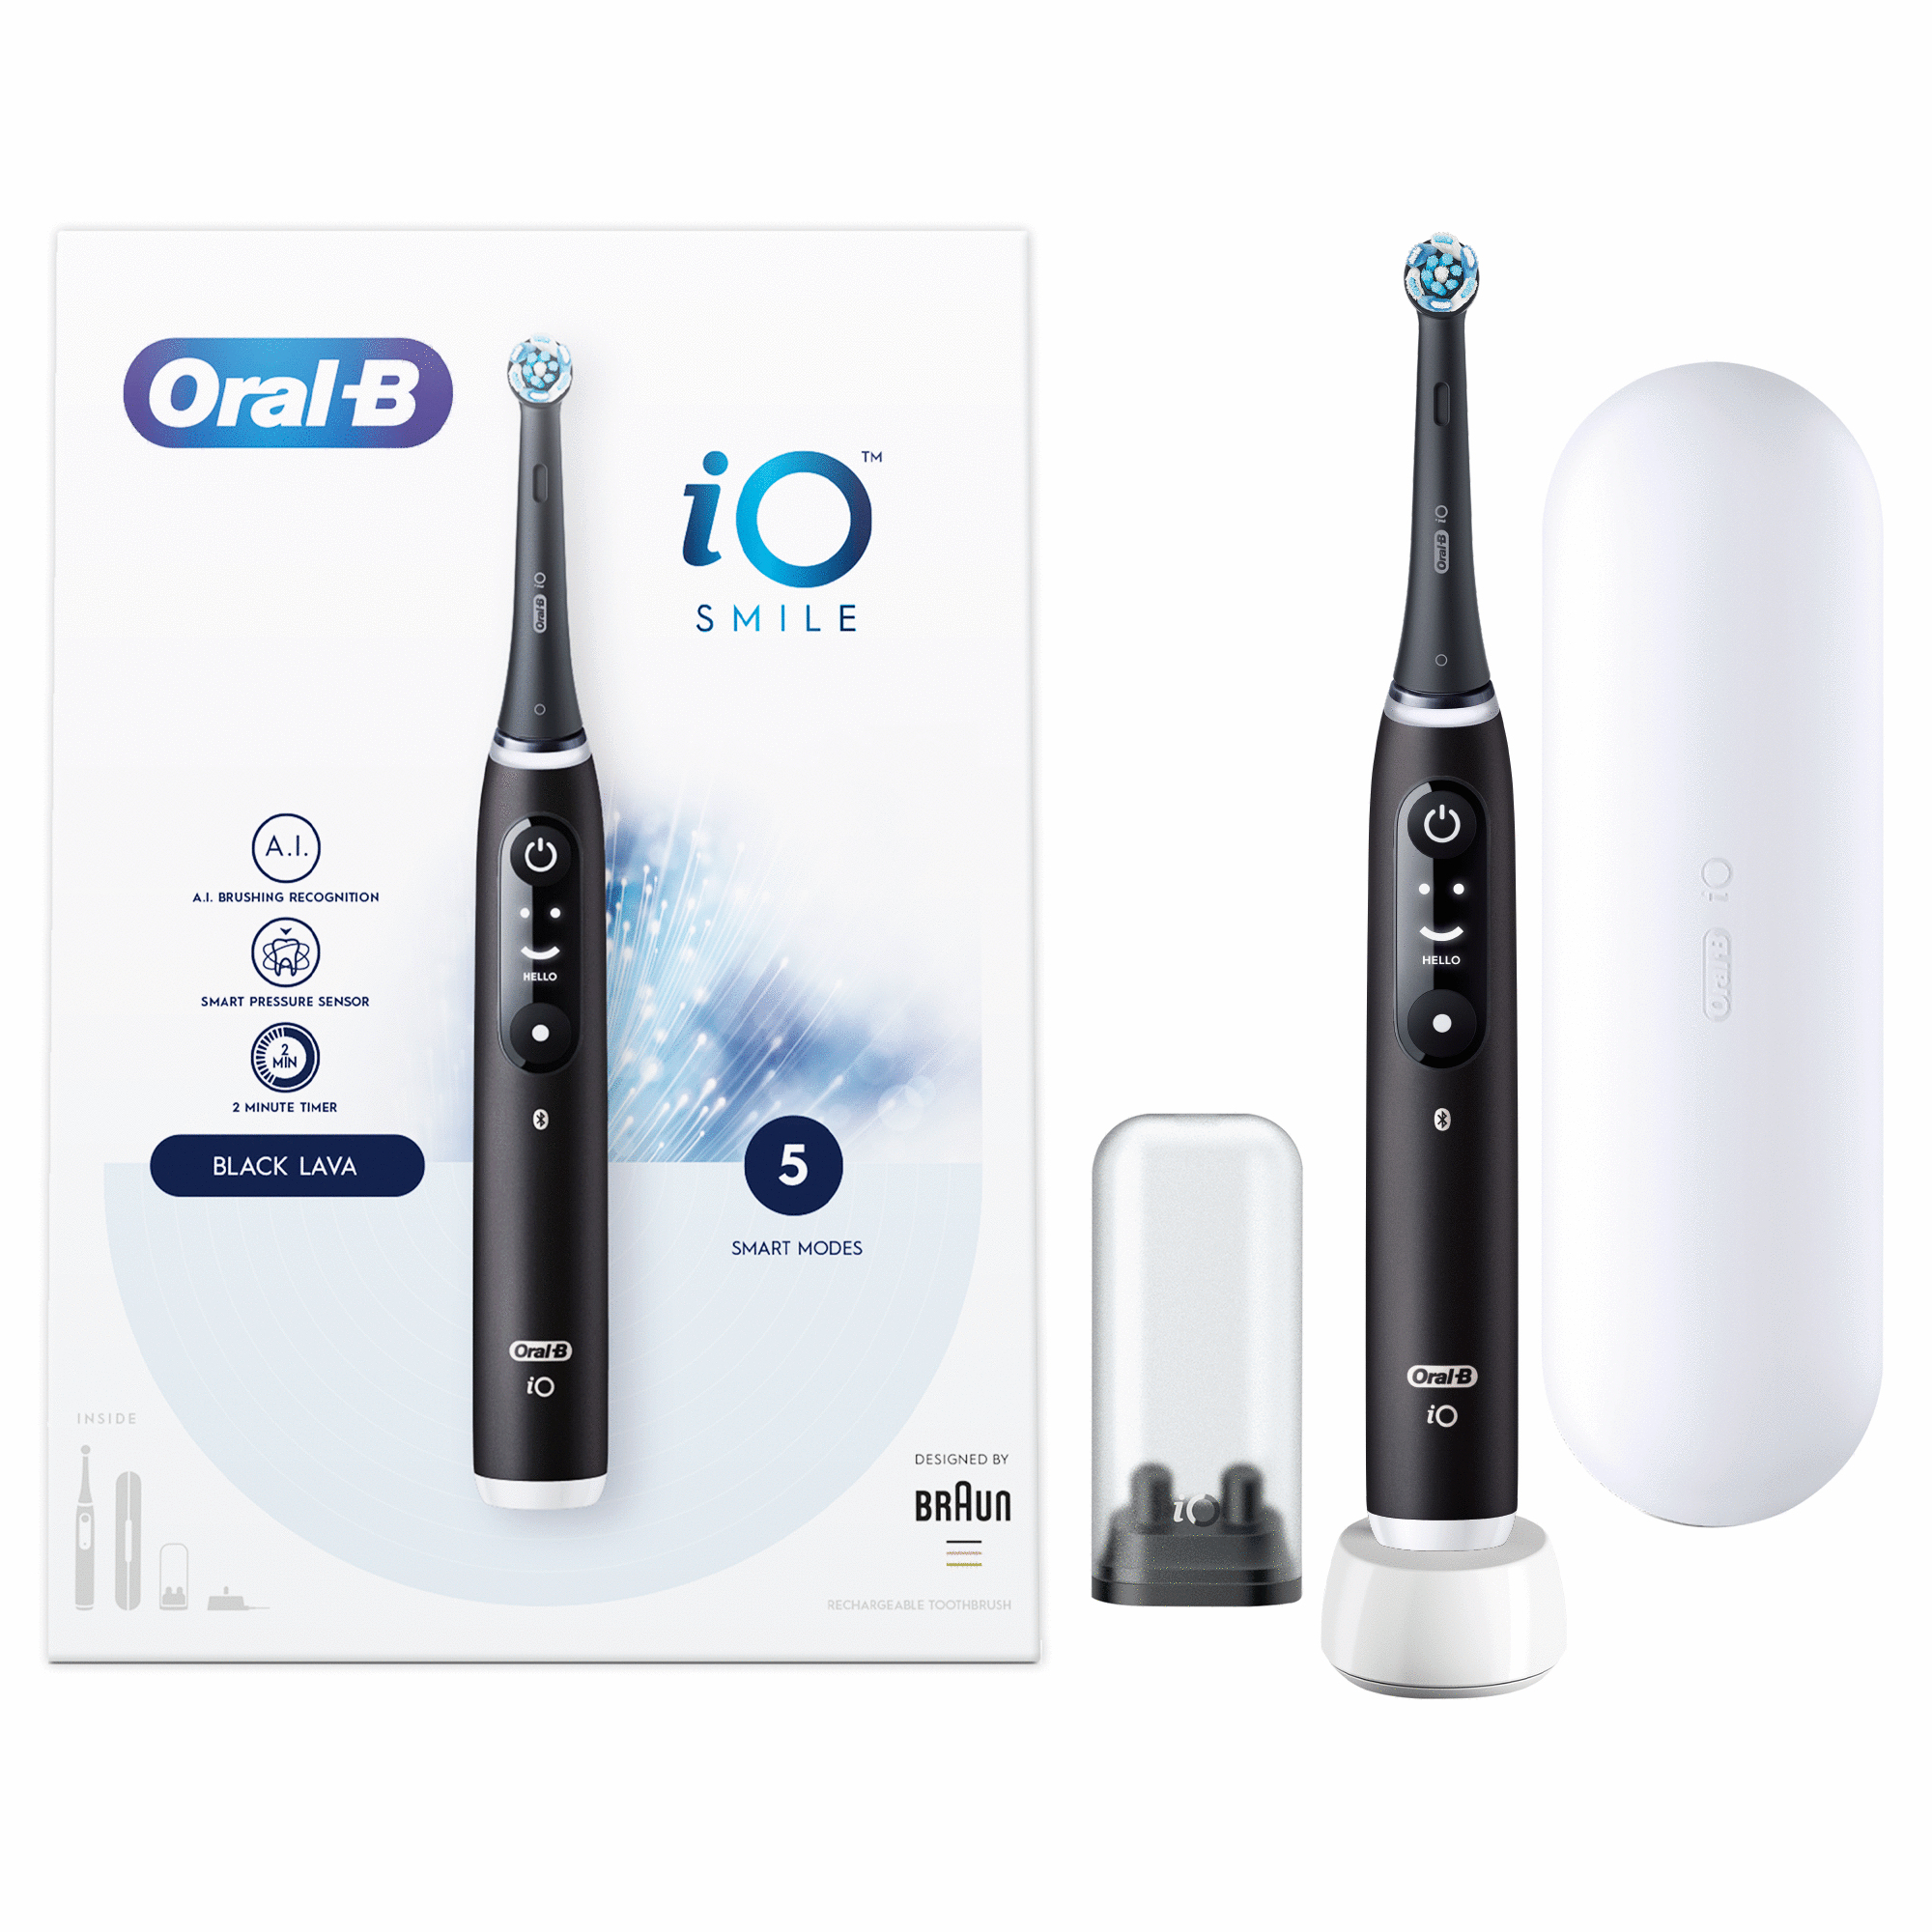 Oral-B Oral-B iO - 6N - SMILE Black Lava Elektrische Tandenborstel Ontworpen Door Braun